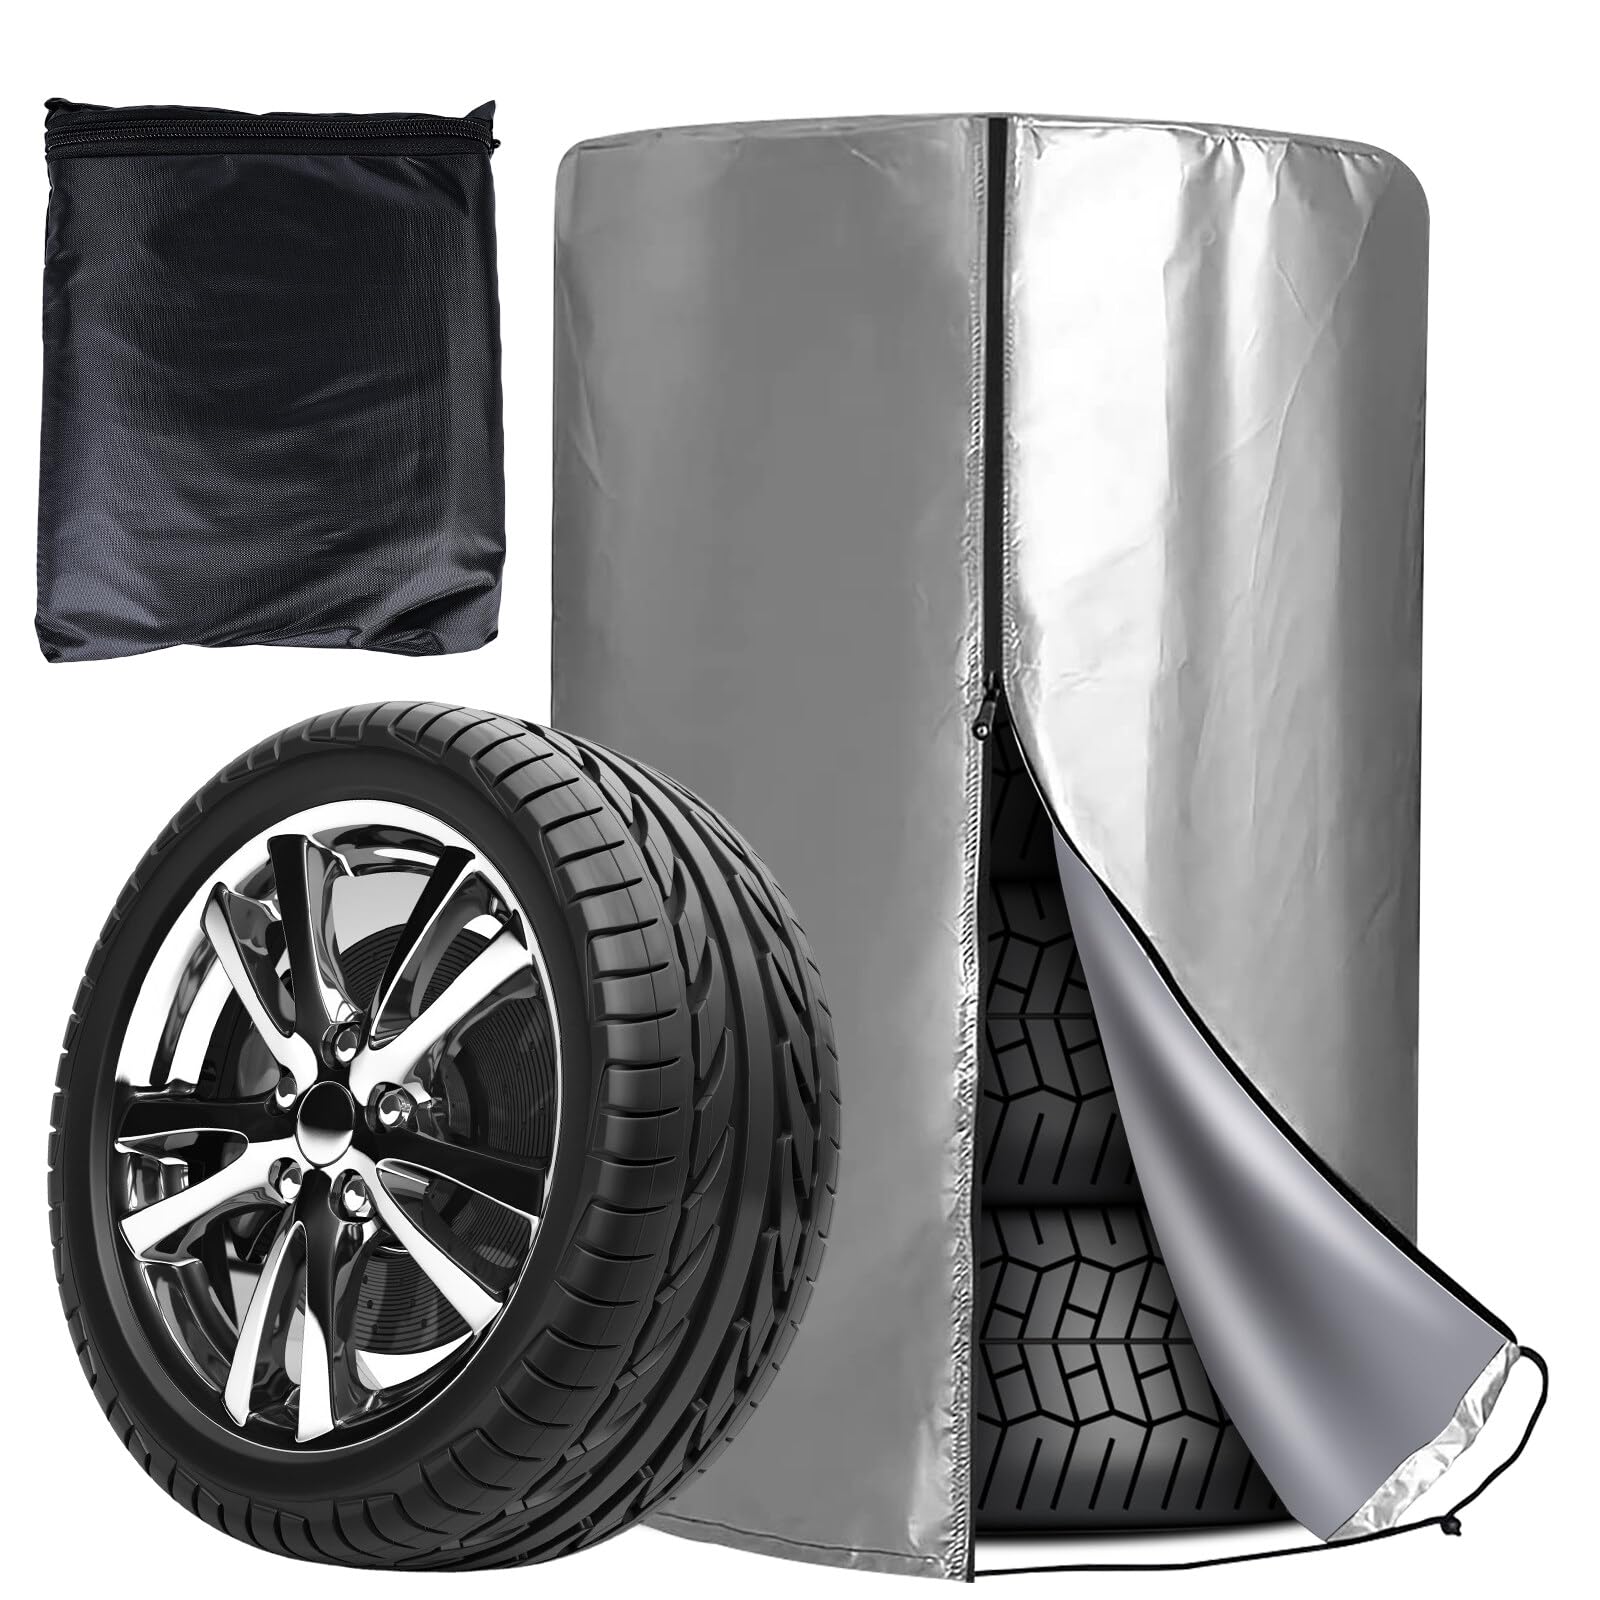 Leikurvo Universale Reifenabdeckung, 80 * 120 cm Auto Reifenabdeckung für 4 Reifen, wasserdichte Staubdicht Reifenschutzhülle, Universale Reifentaschen mit Reißverschluss von Leikurvo